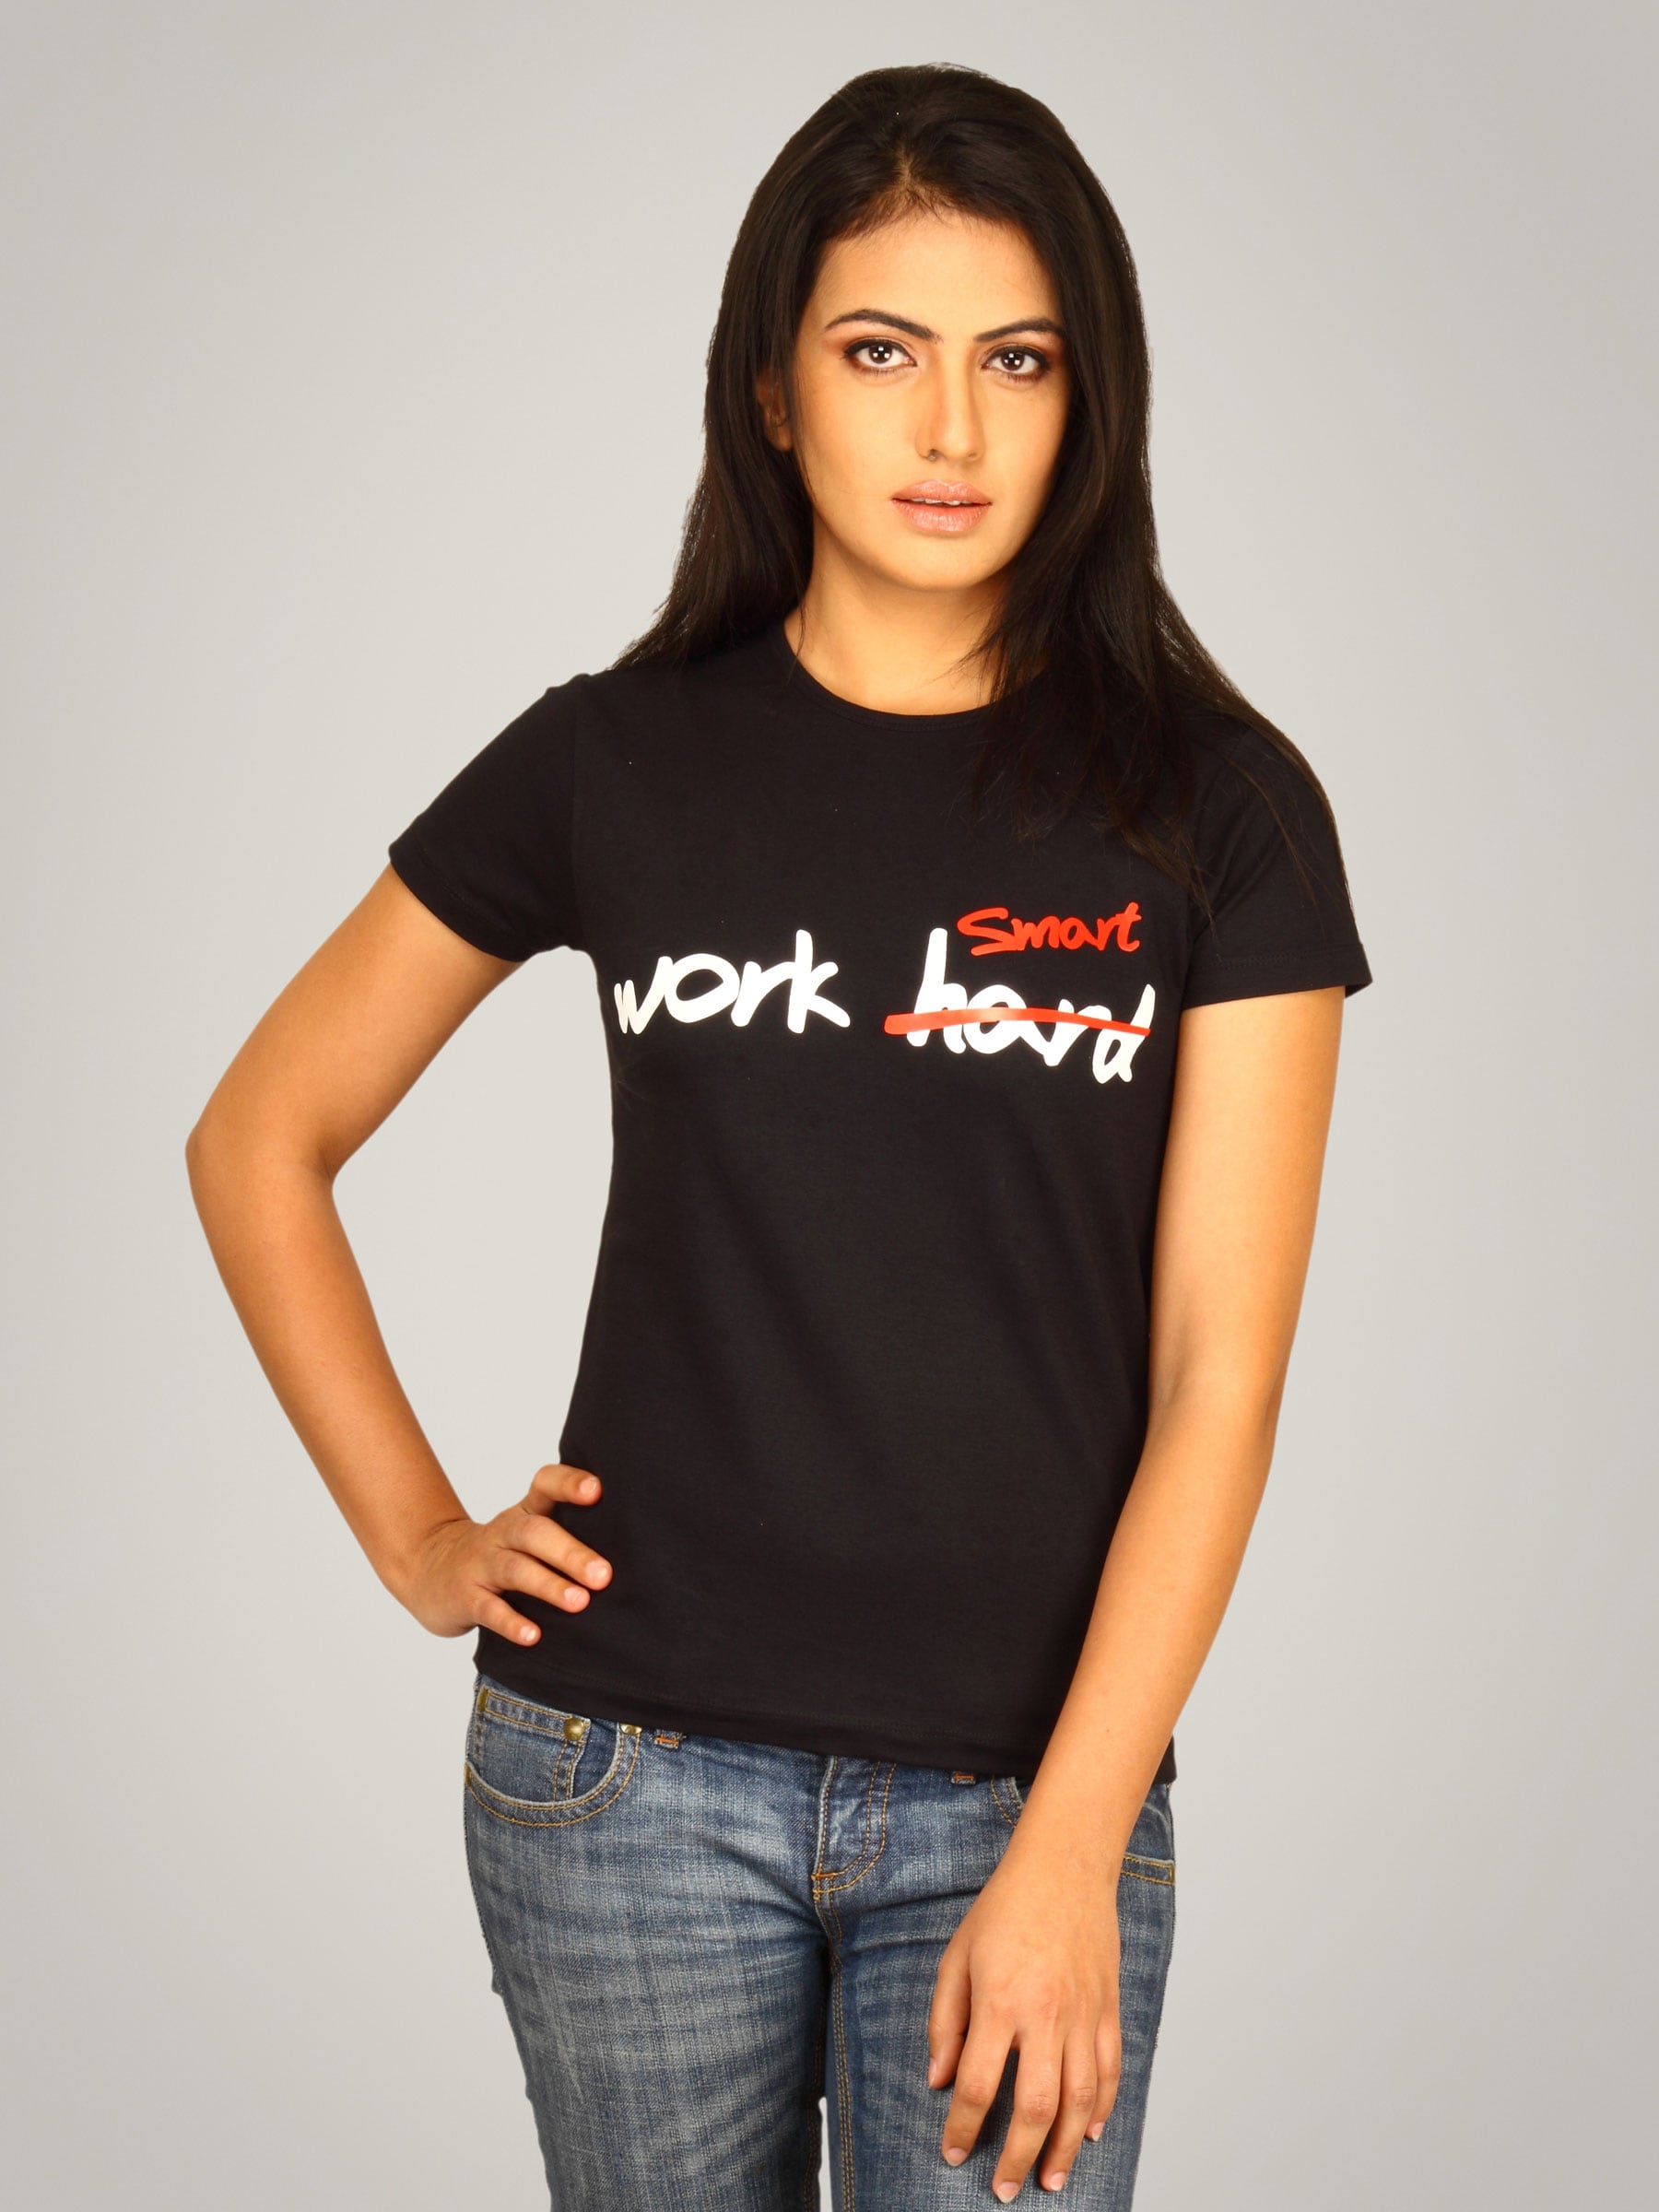 Myntra Women's Work Hard/ Smart T-shirt